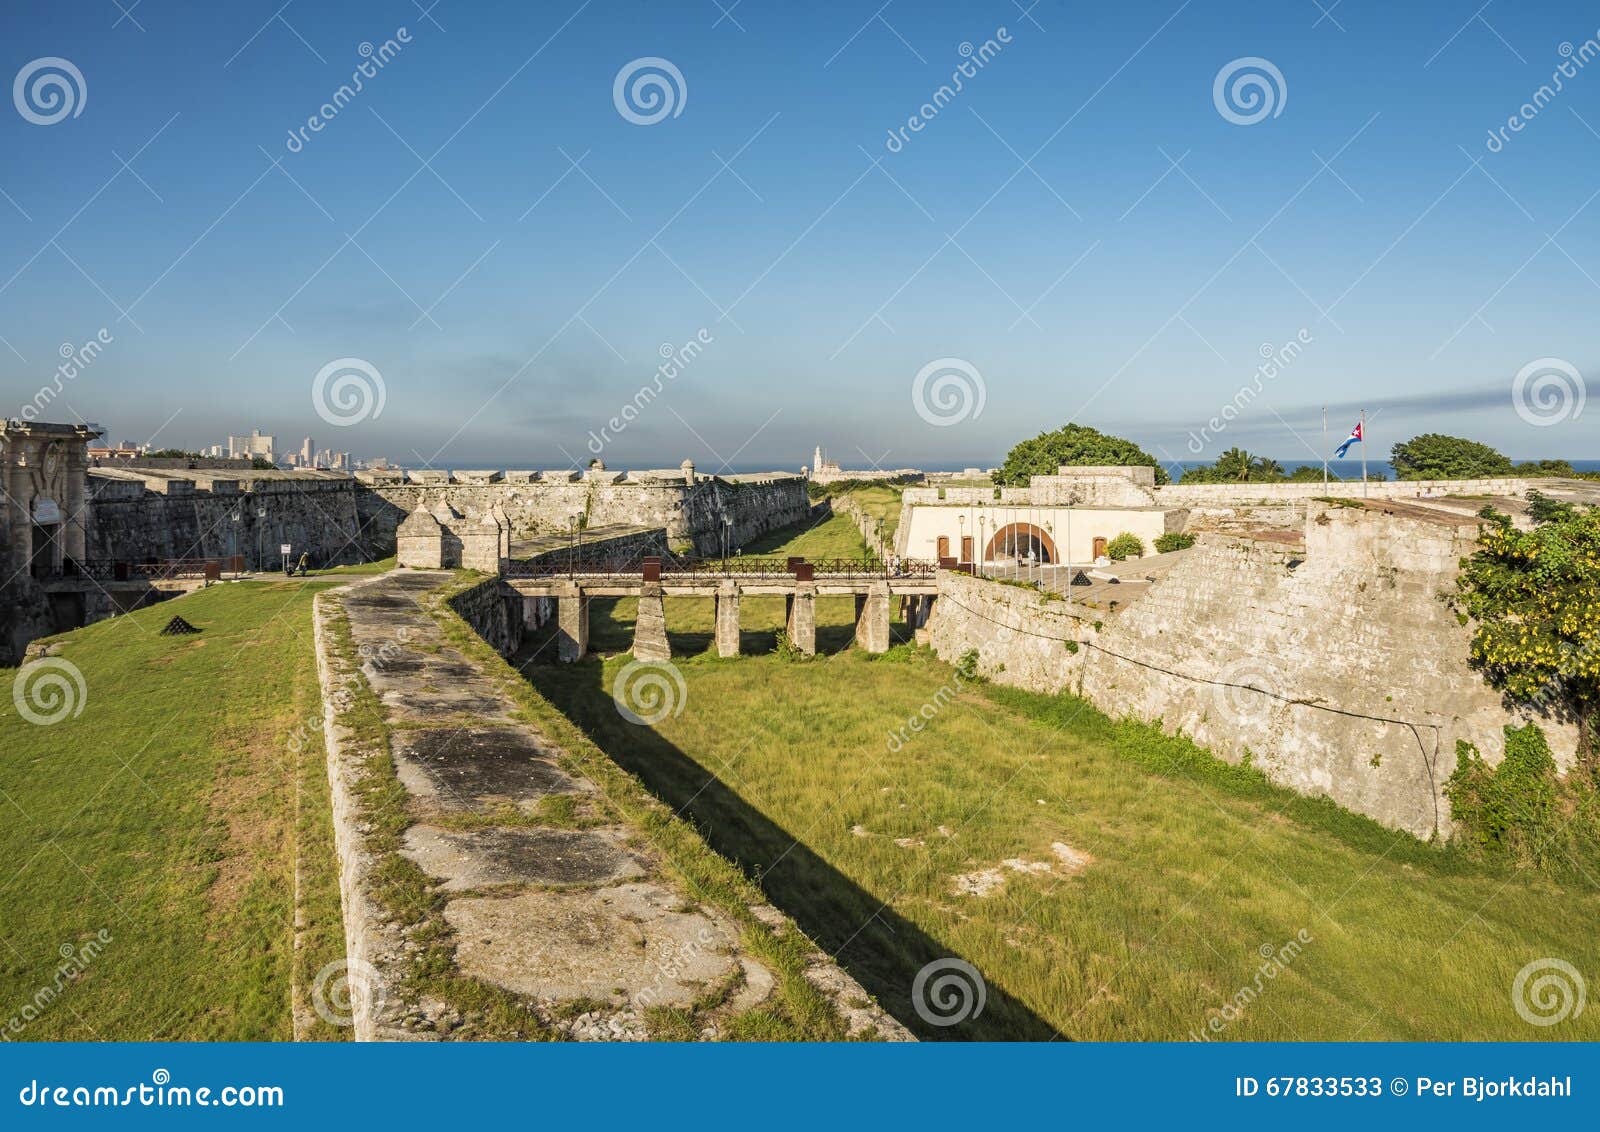 fortress of san carlos de la cabaÃÂ±a havana